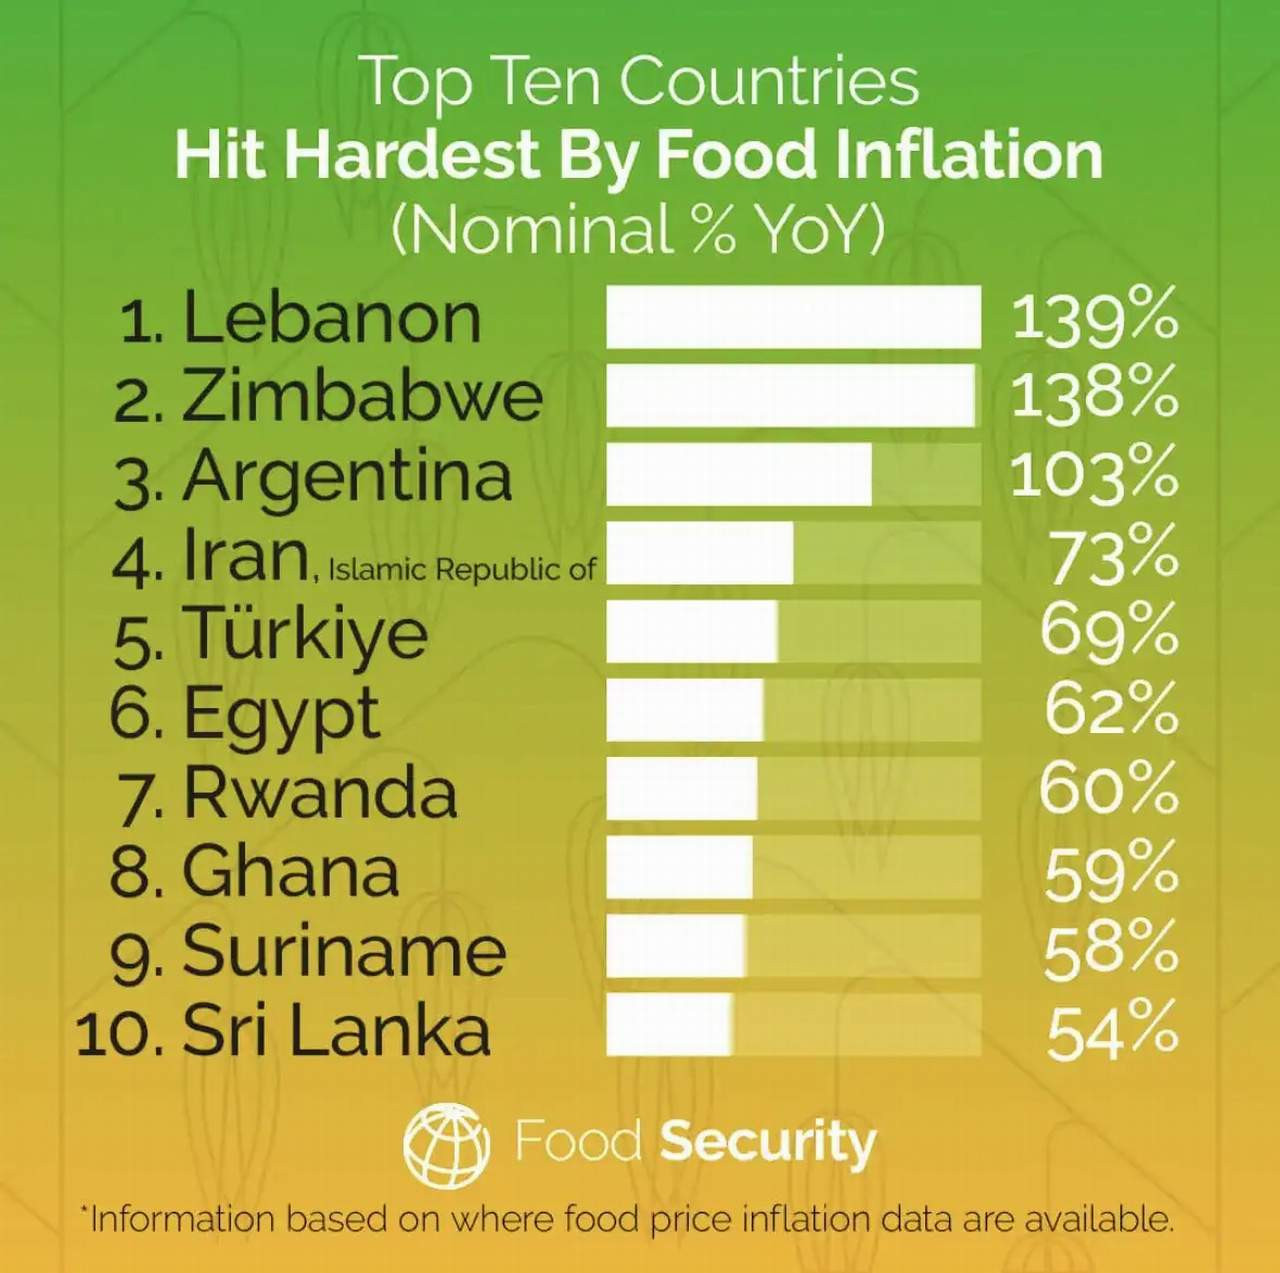 Dünya Bankası tarafından yayınlanan Gıda Güvenliği raporunda yer alan gıda enflasyonu sıralamasında Türkiye 5'inci sıraya yükseldi.